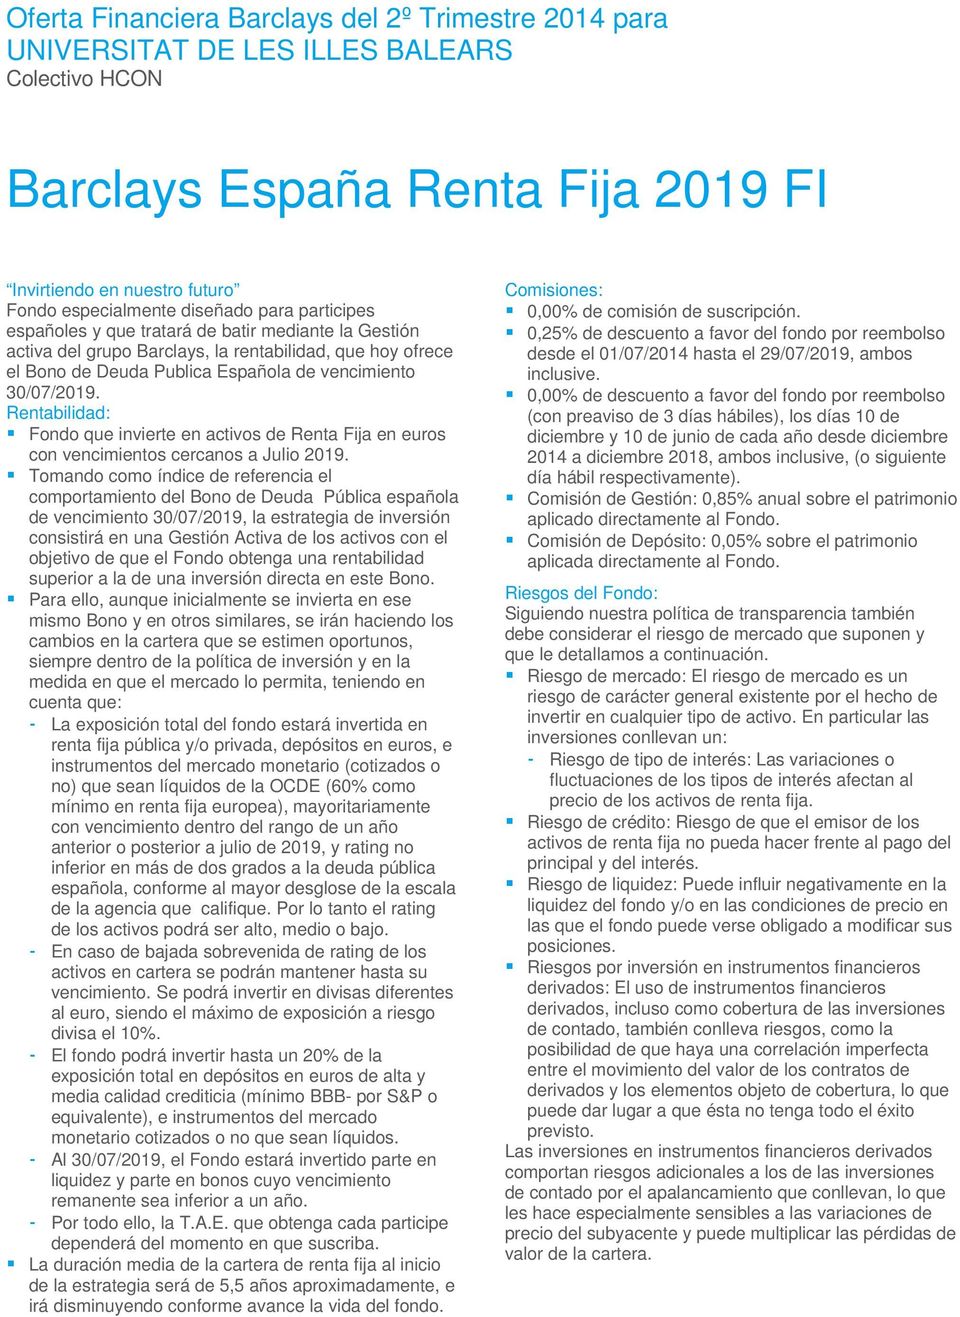 Tomando como índice de referencia el comportamiento del Bono de Deuda Pública española de vencimiento 30/07/2019, la estrategia de inversión consistirá en una Gestión Activa de los activos con el